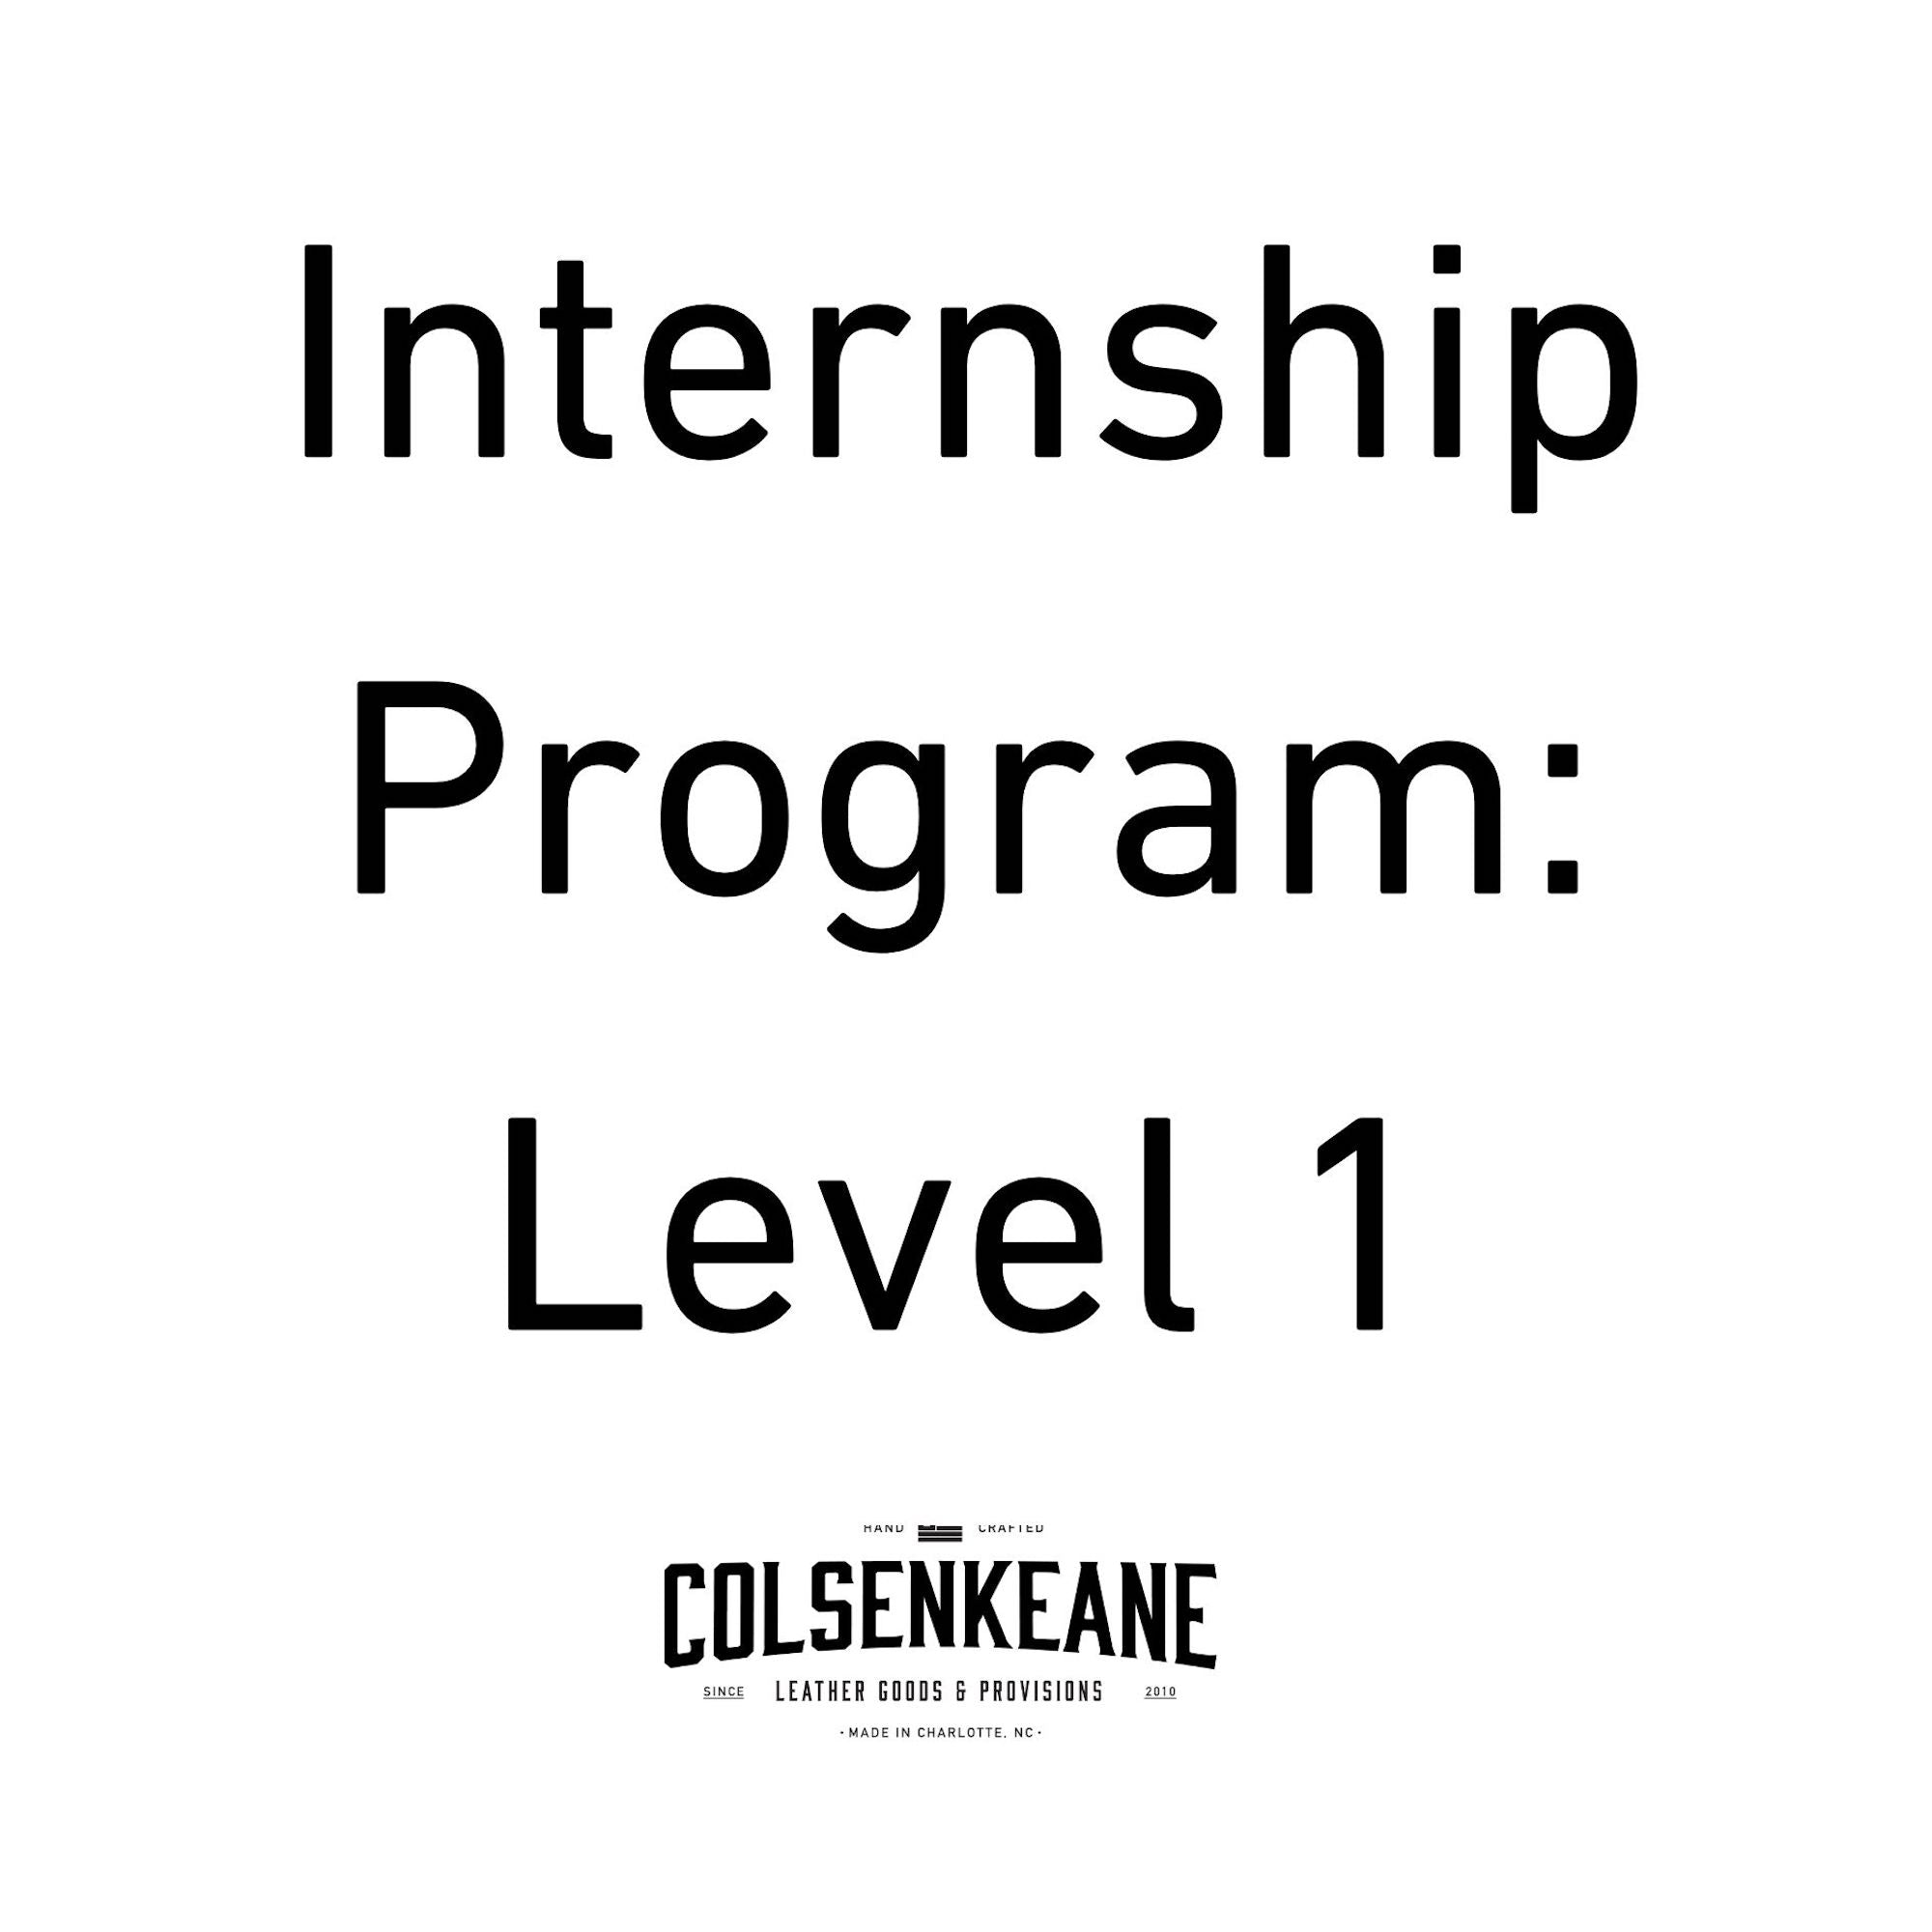 Internship Program, Level 1